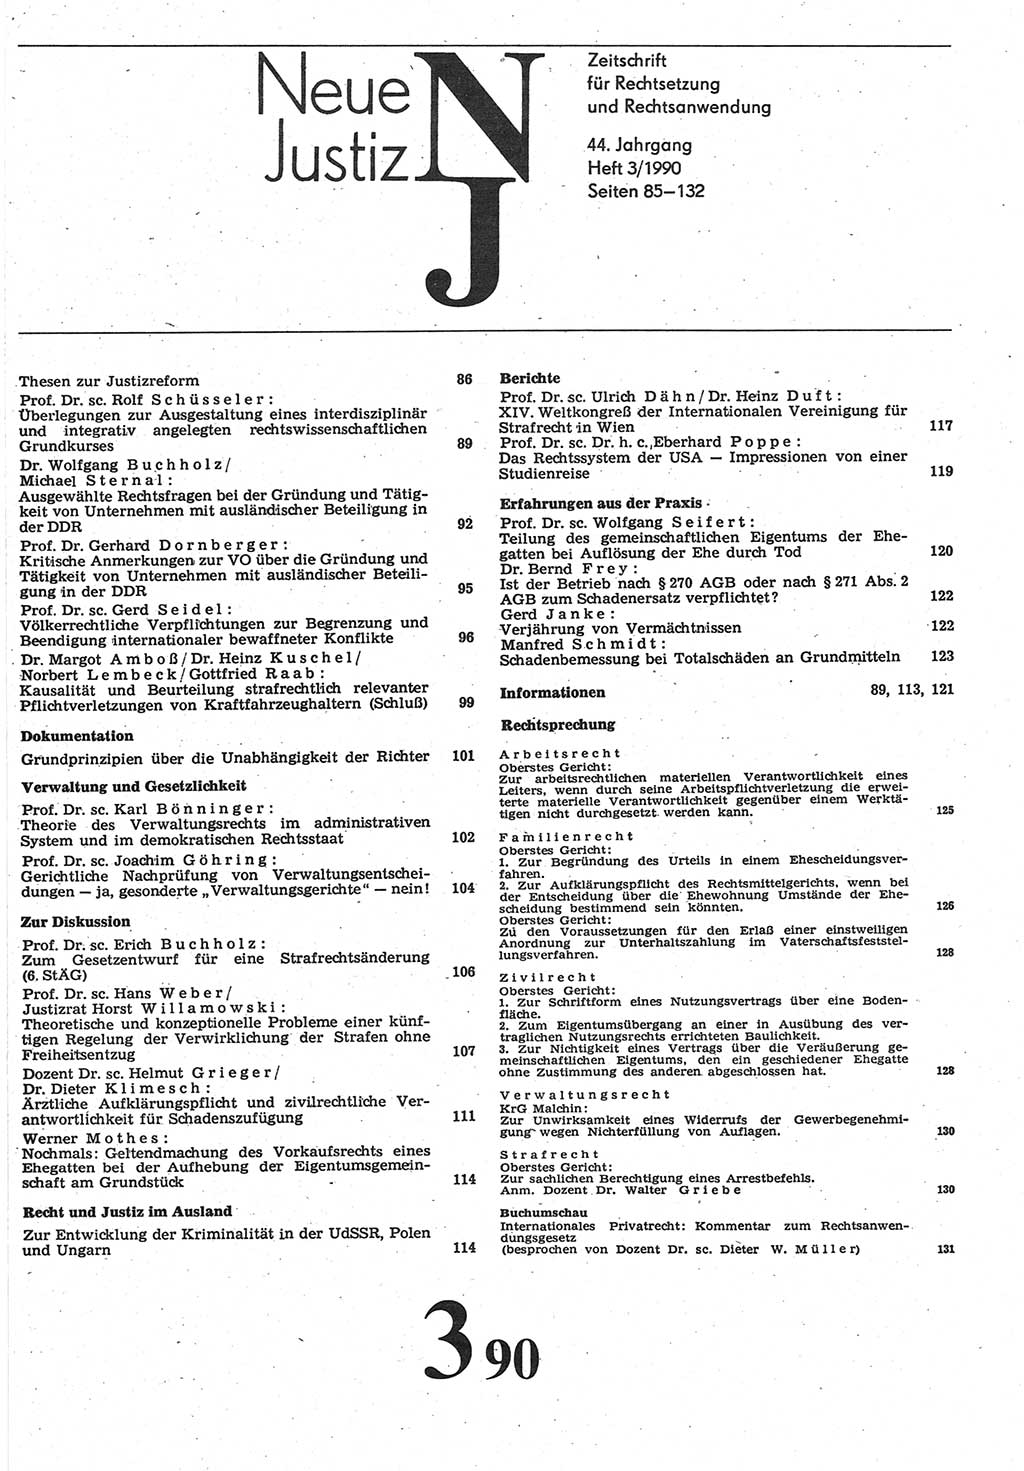 Neue Justiz (NJ), Zeitschrift für Rechtsetzung und Rechtsanwendung [Deutsche Demokratische Republik (DDR)], 44. Jahrgang 1990, Seite 85 (NJ DDR 1990, S. 85)